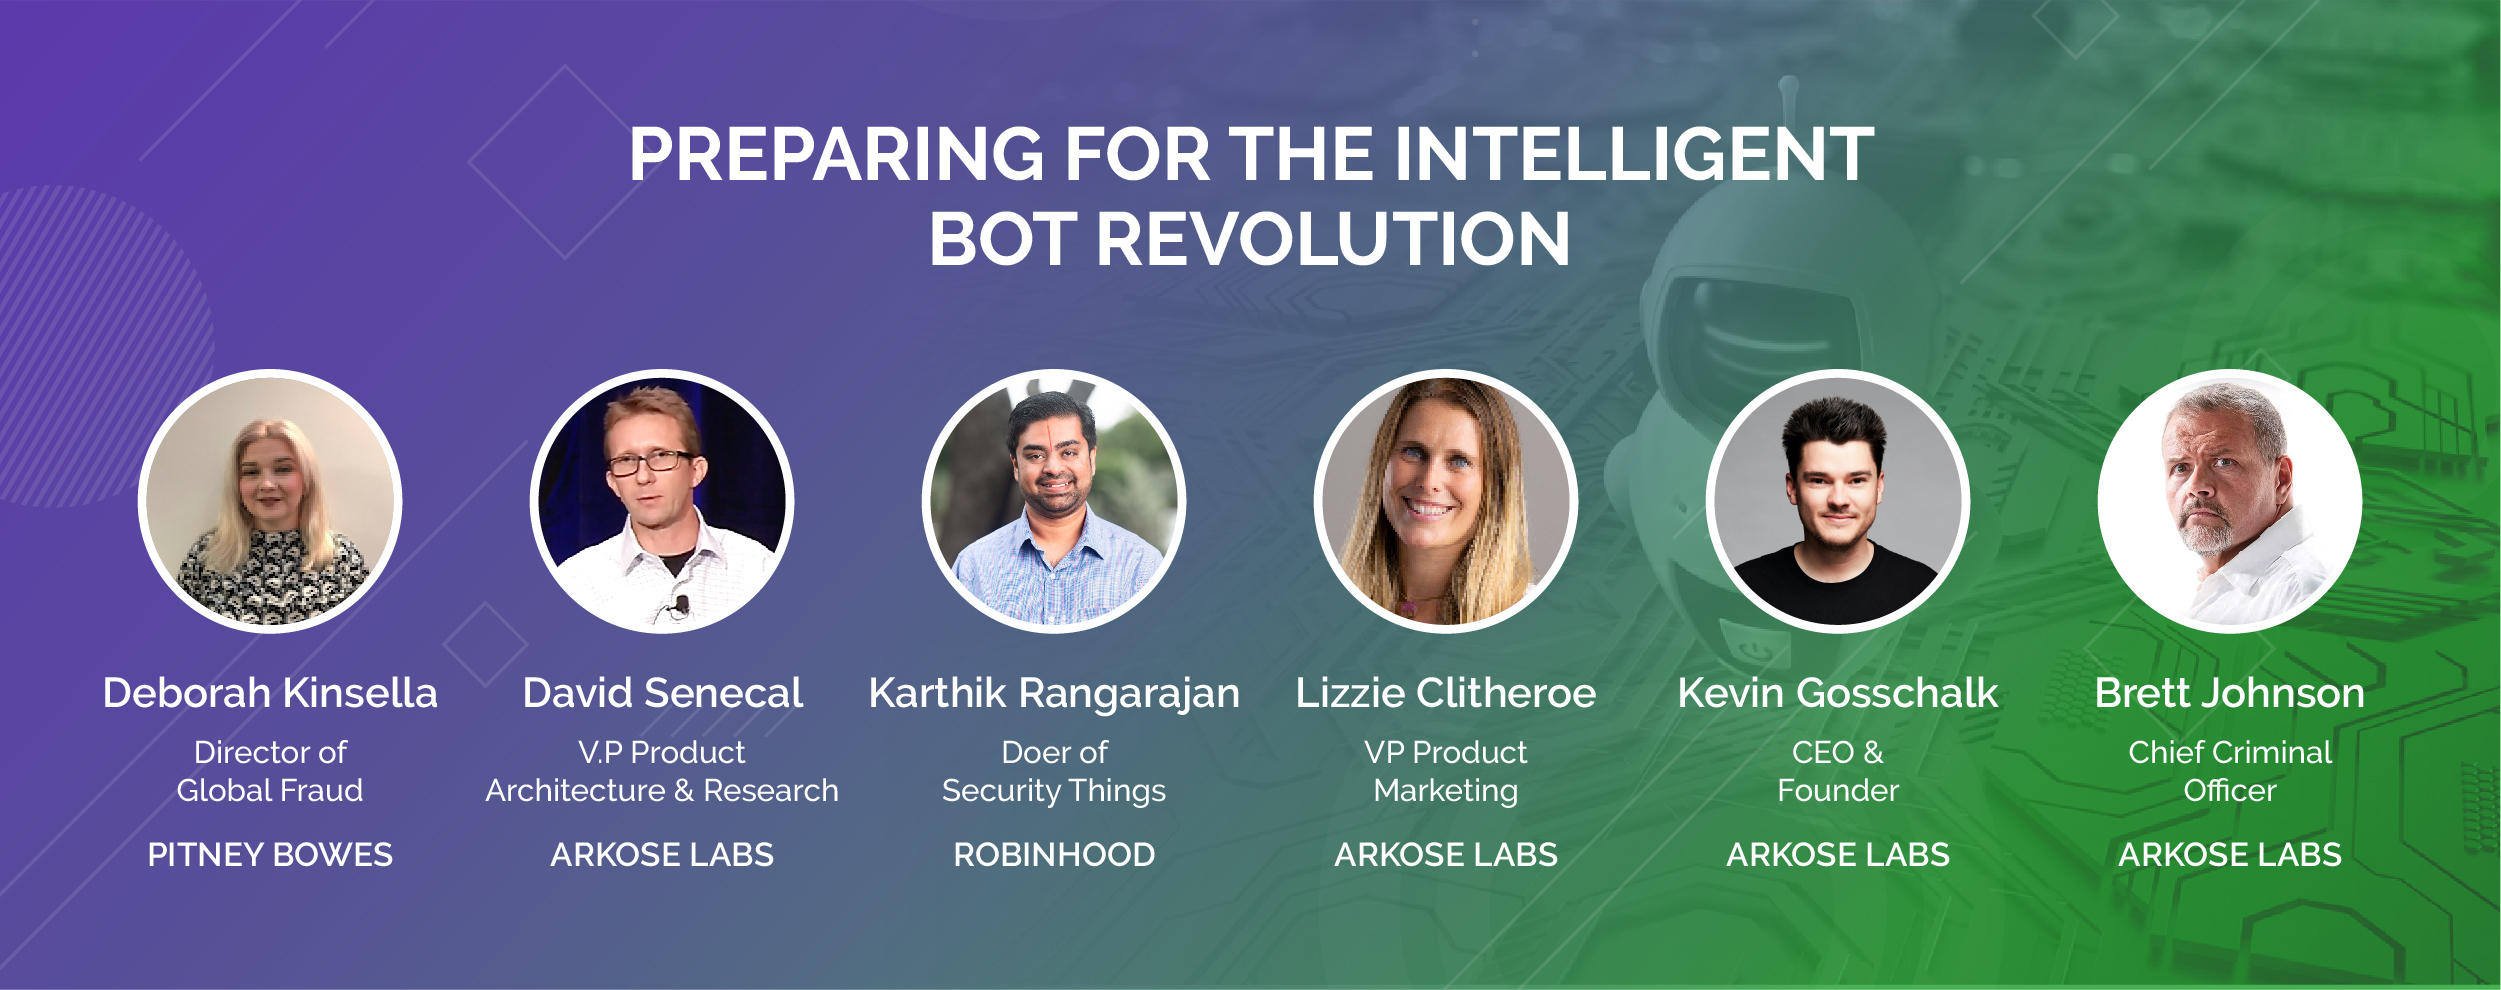 Preparing for the Intelligent Bot Revolution